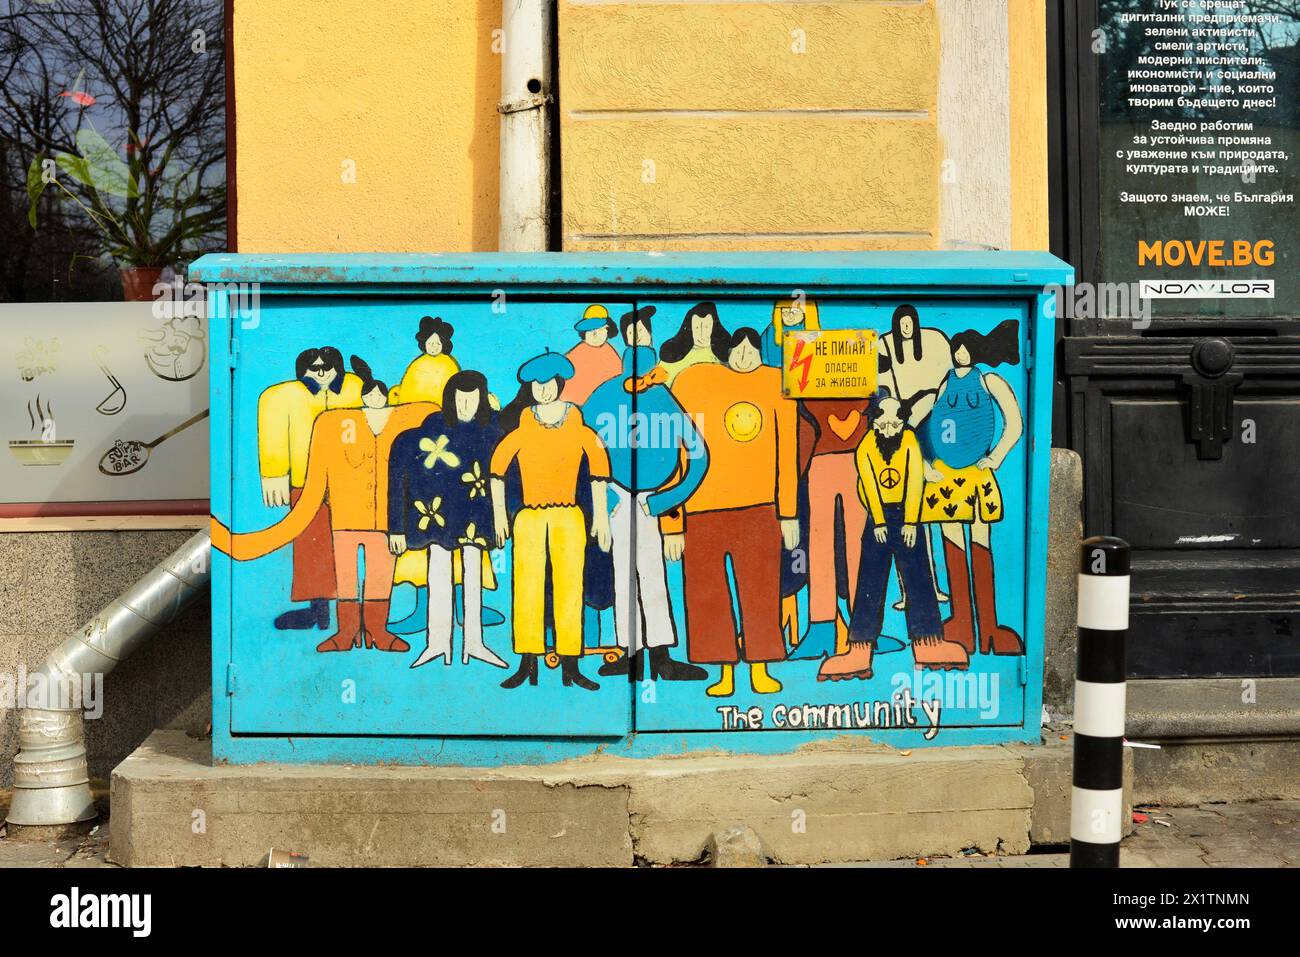 Street Art Graffiti farbenfrohe Malerei von Menschen mit Text die Gemeinschaft auf Straßenschaltschrank in Sofia Bulgarien, Osteuropa, Balkan, EU Stockfoto